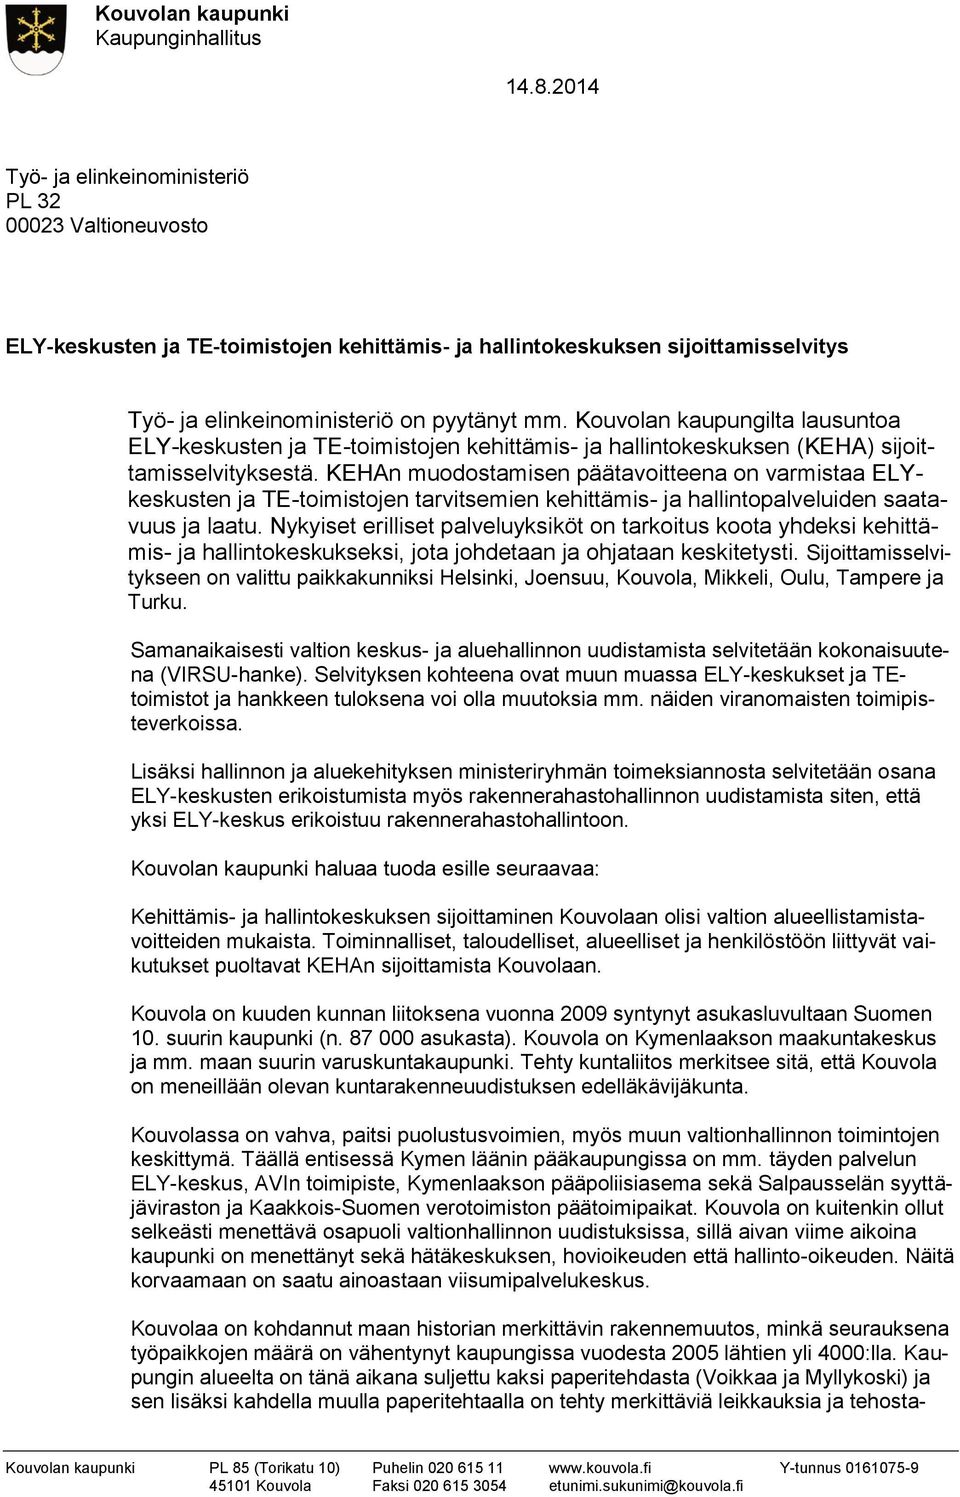 Kouvolan kaupungilta lausuntoa ELY-keskusten ja TE-toimistojen kehittämis- ja hallintokeskuksen (KEHA) sijoittamisselvityksestä.